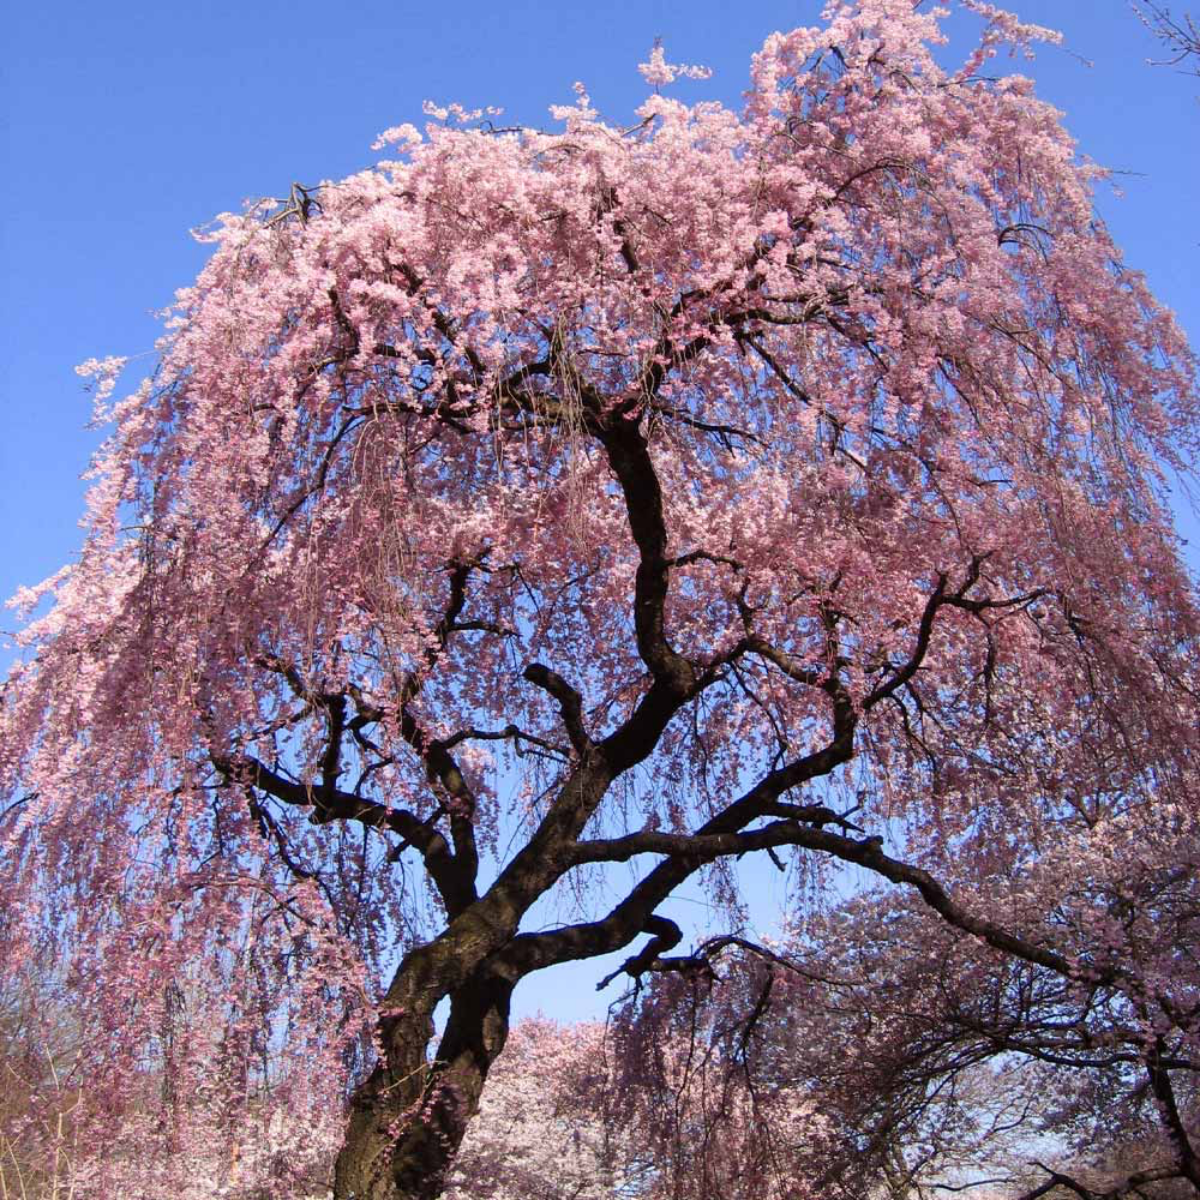 blooming weeping cherry tree